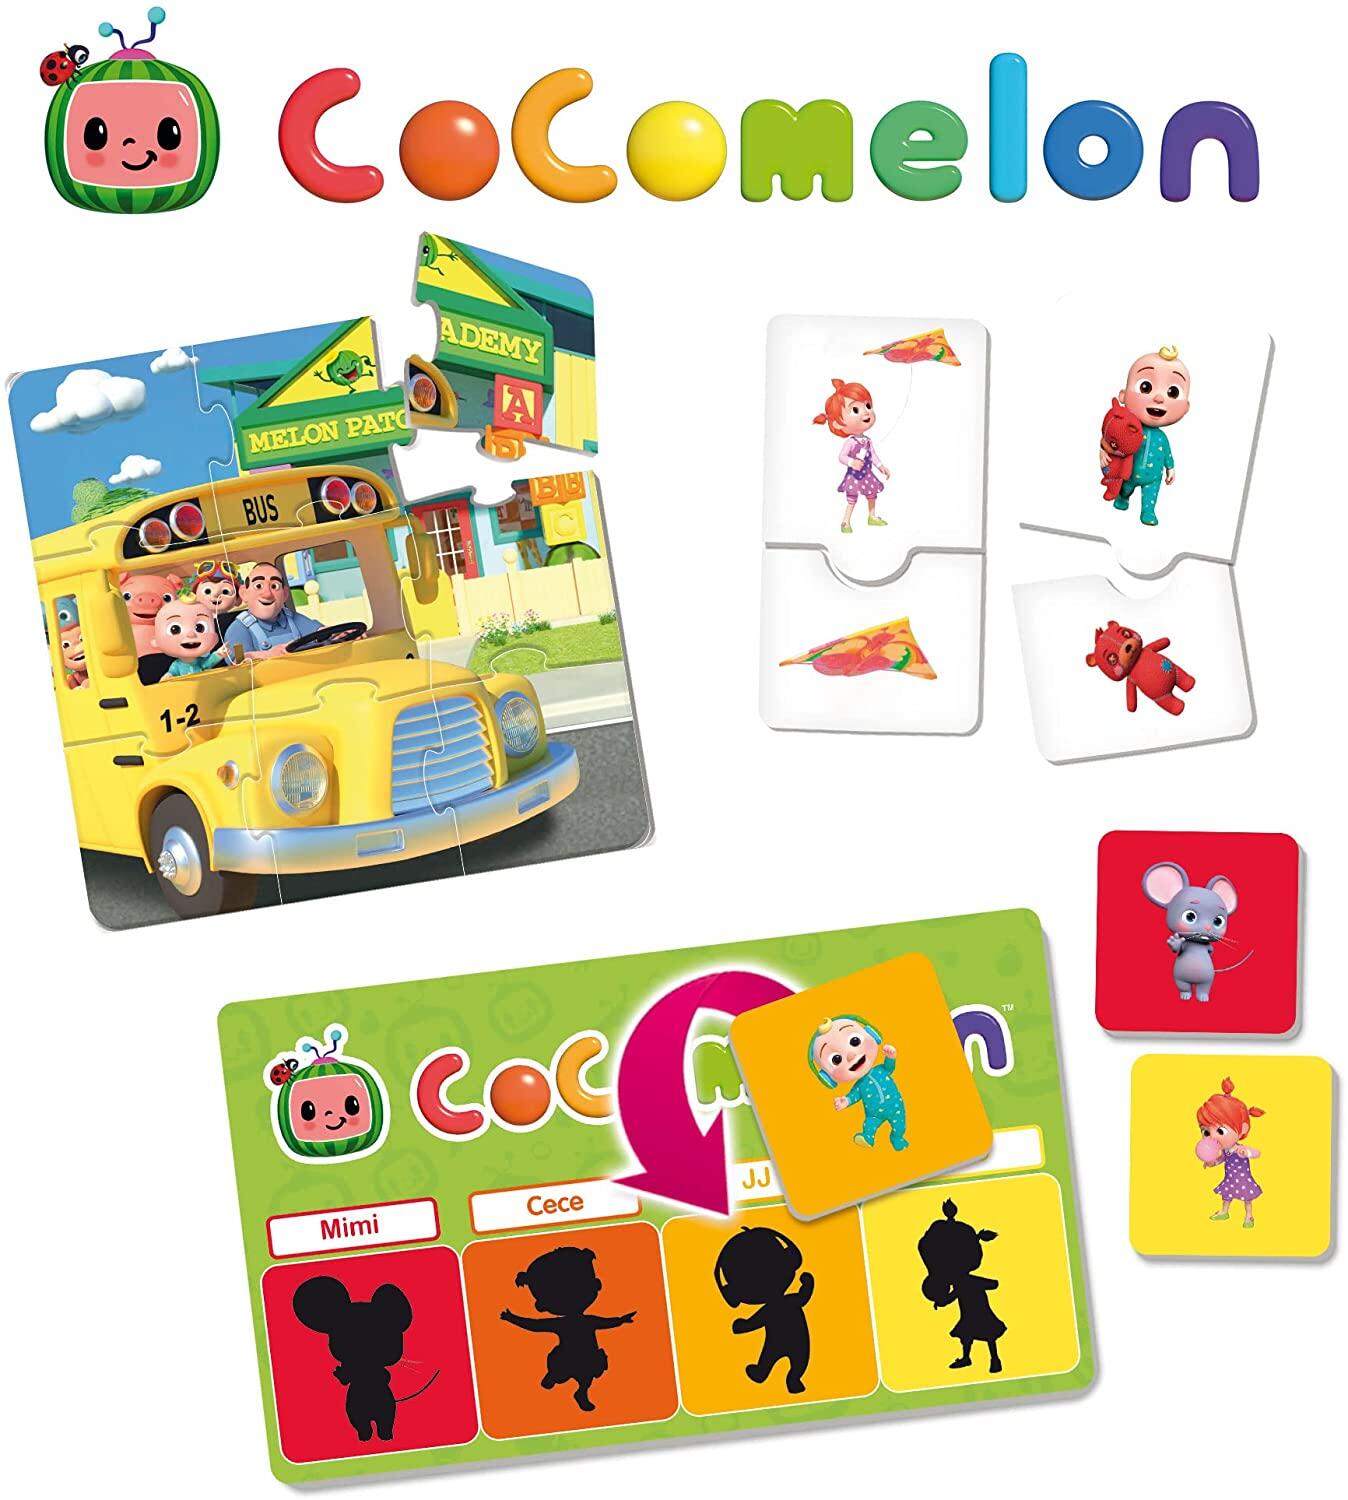 Prima mea colectie de jocuri - Cocomelon PlayLearn Toys